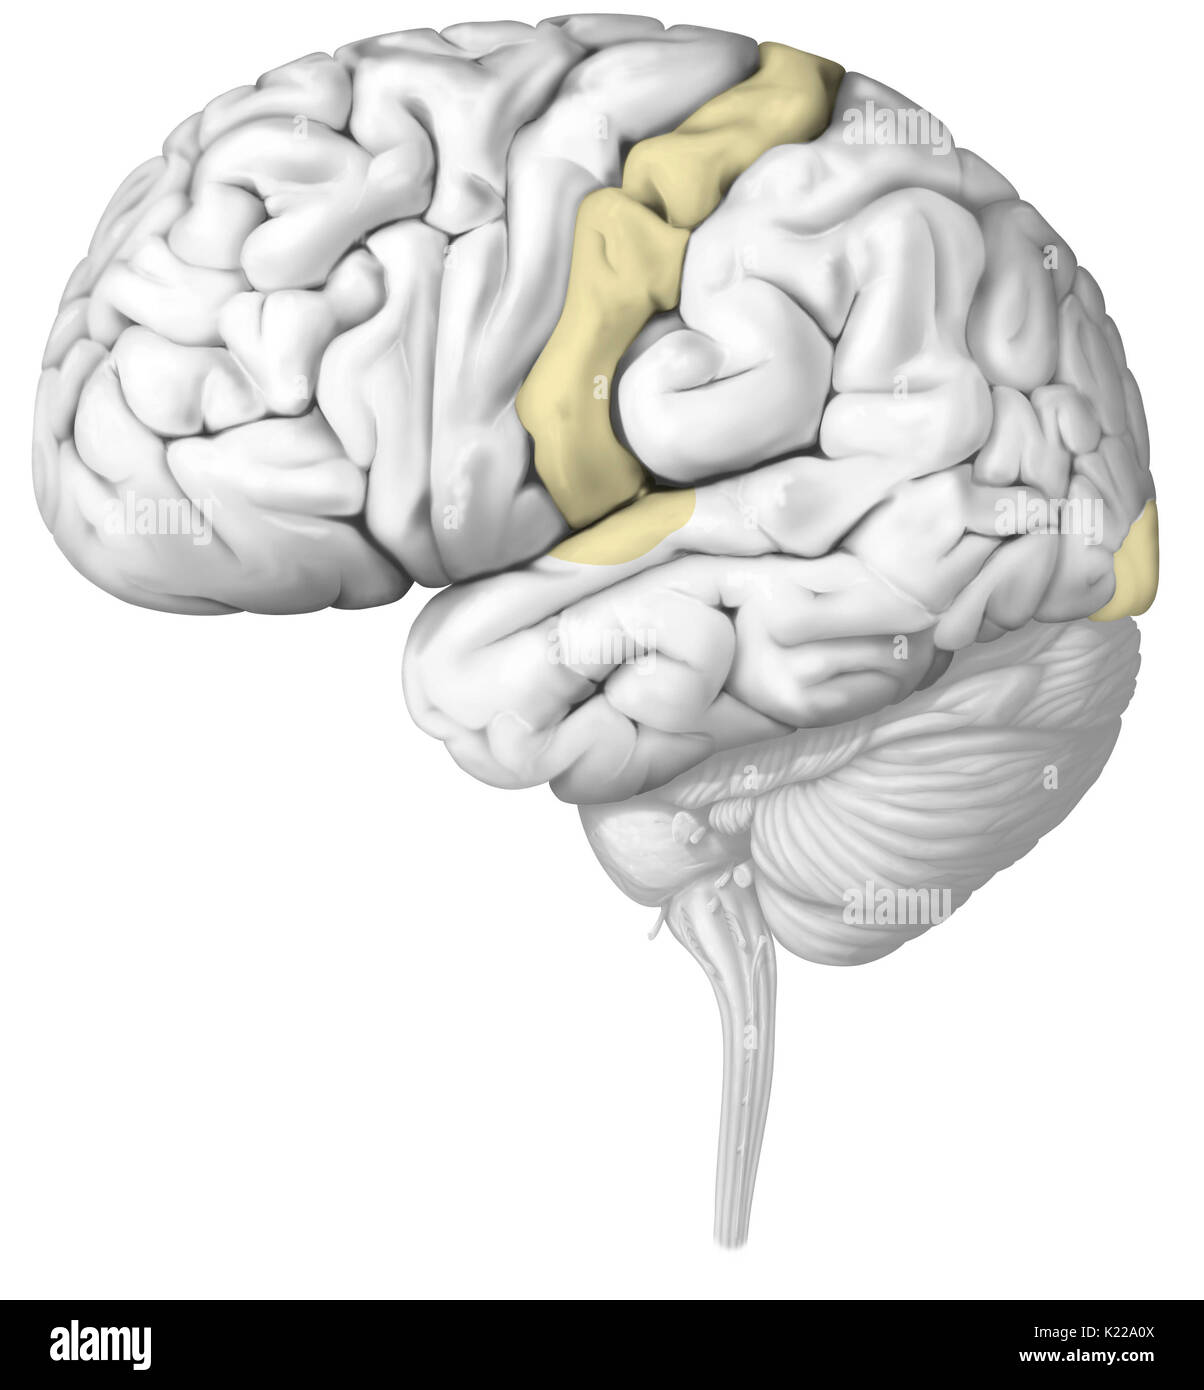 La impulsi nervosi vengono analizzati nelle zone del cervello specifiche per ciascun senso. Lesioni di un organo sensoriale può compromettere gravemente il suo funzionamento. Foto Stock